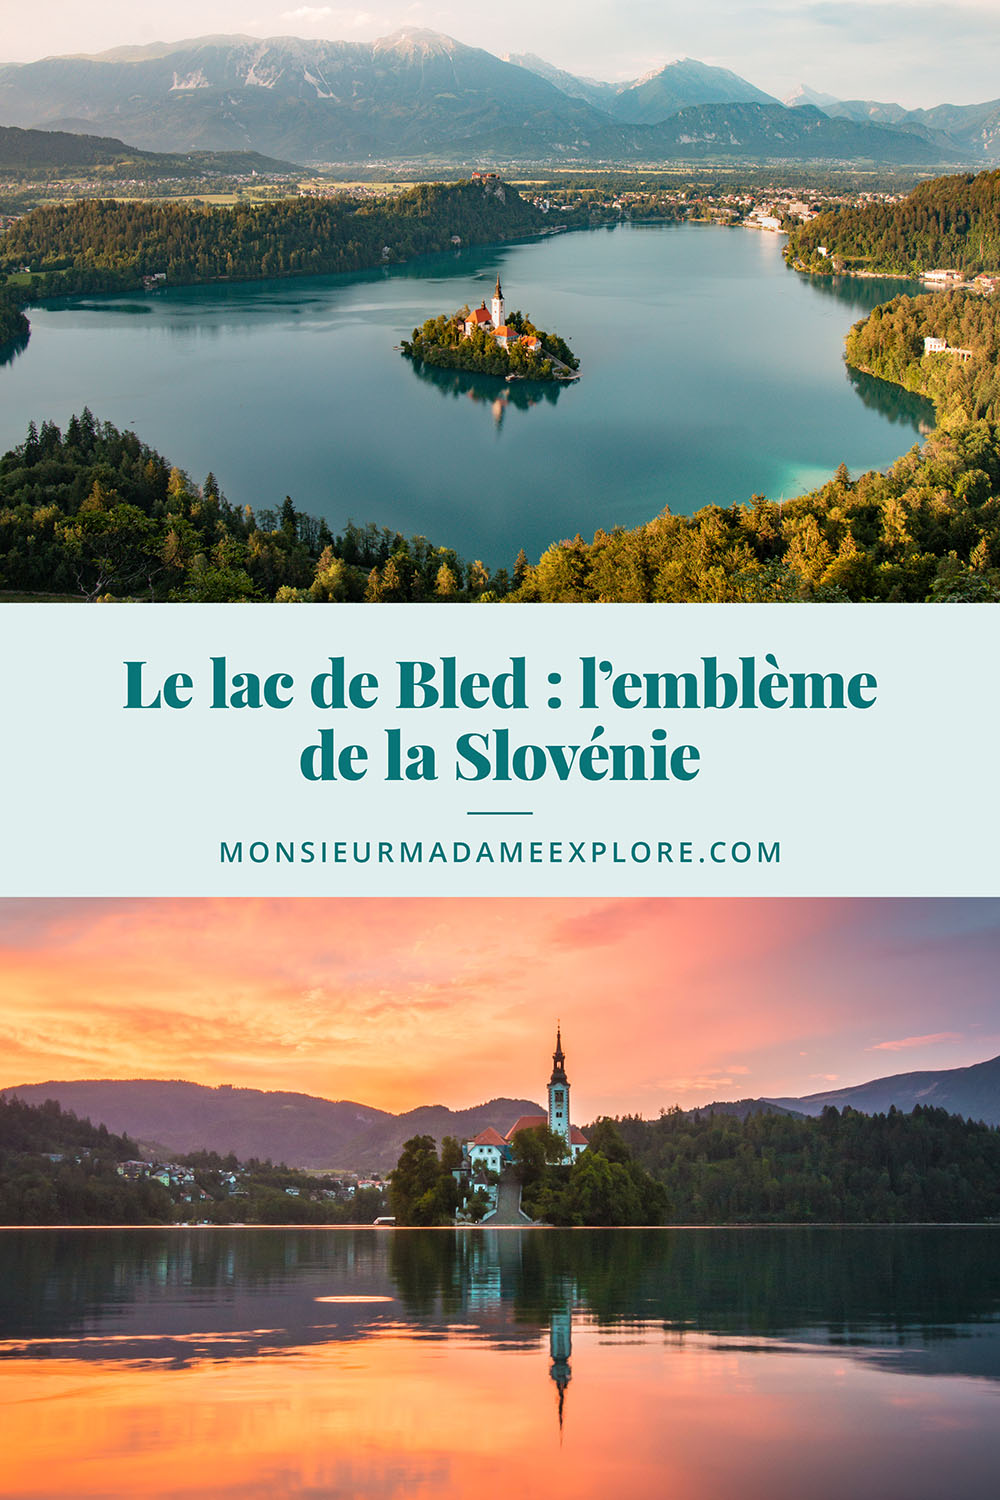 Le lac de Bled : l’emblème de la Slovénie, Monsieur+Madame Explore, Blogue de voyage, Slovénie / Visiting Lake Bled, Slovenia